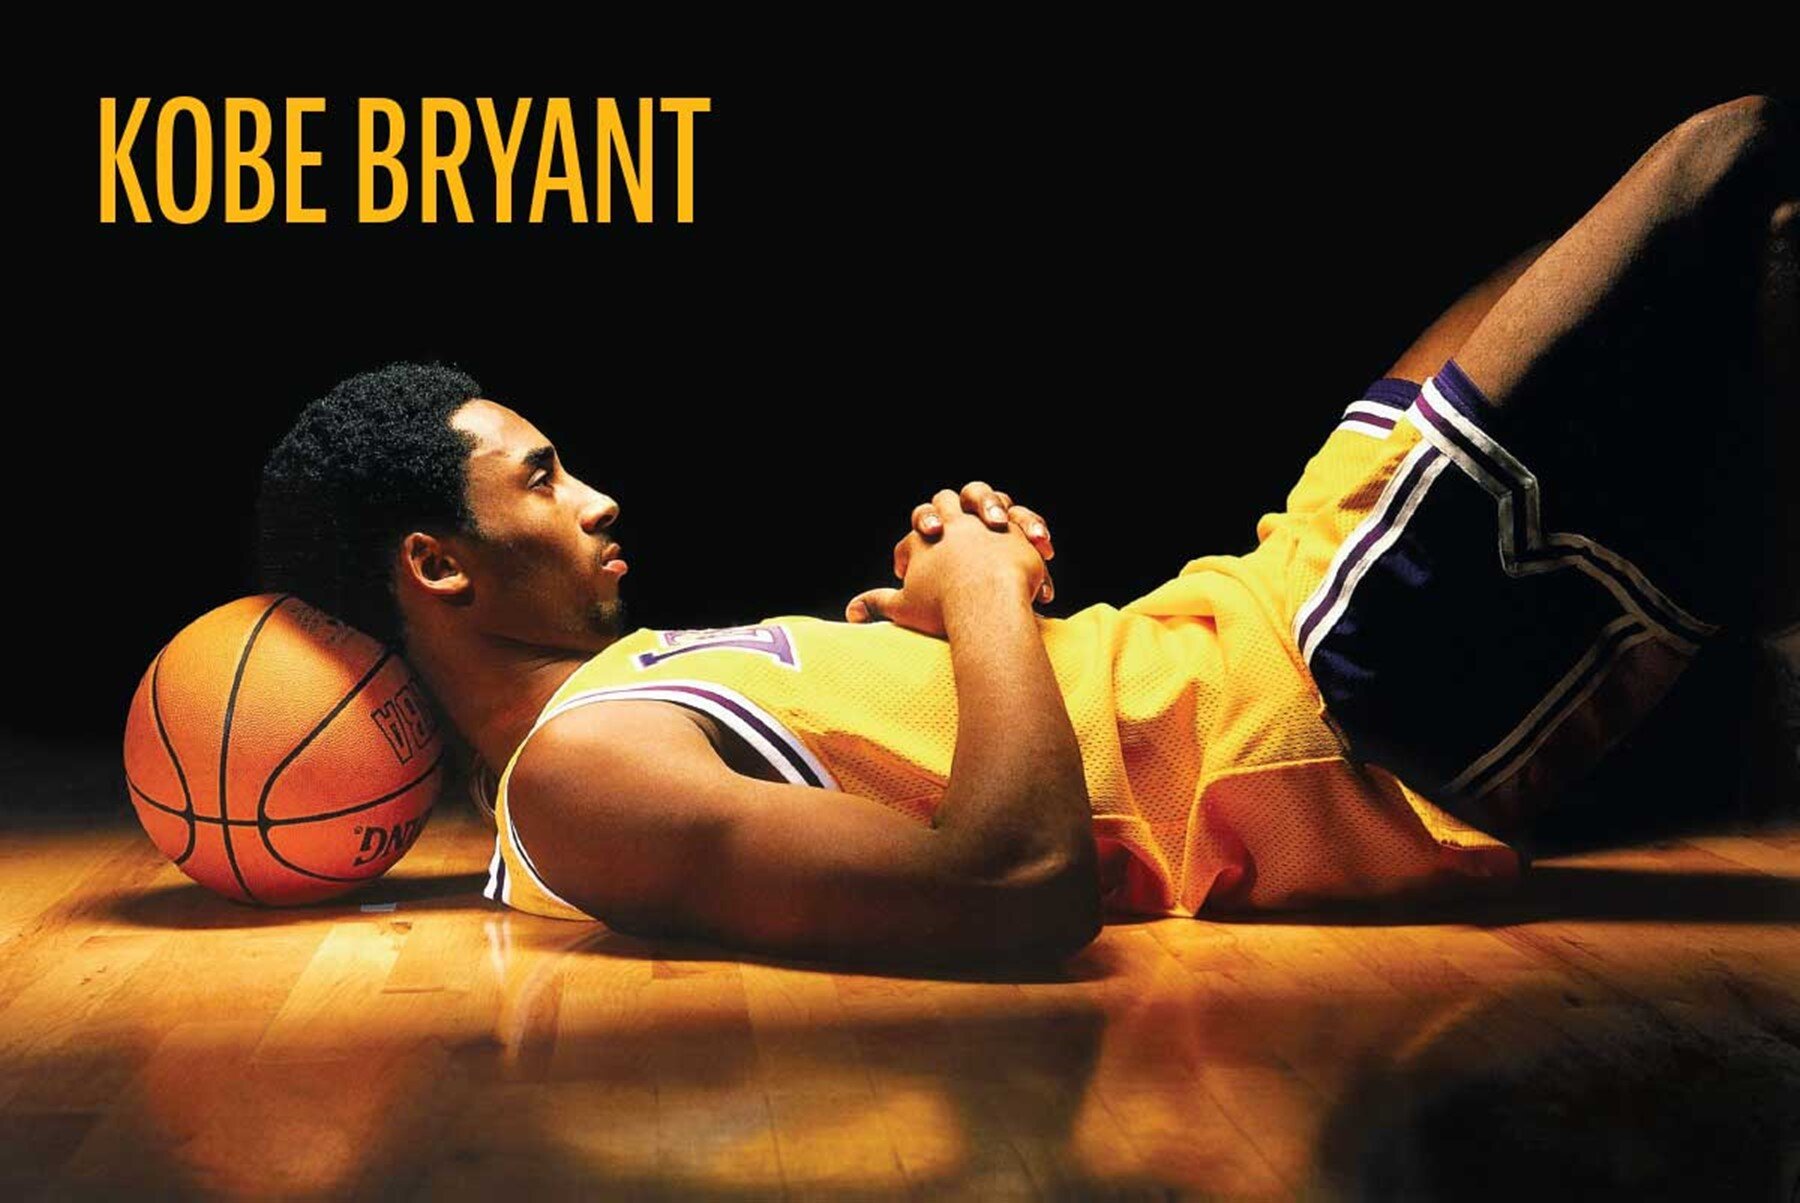 Kobe Bryant Free Throw Art